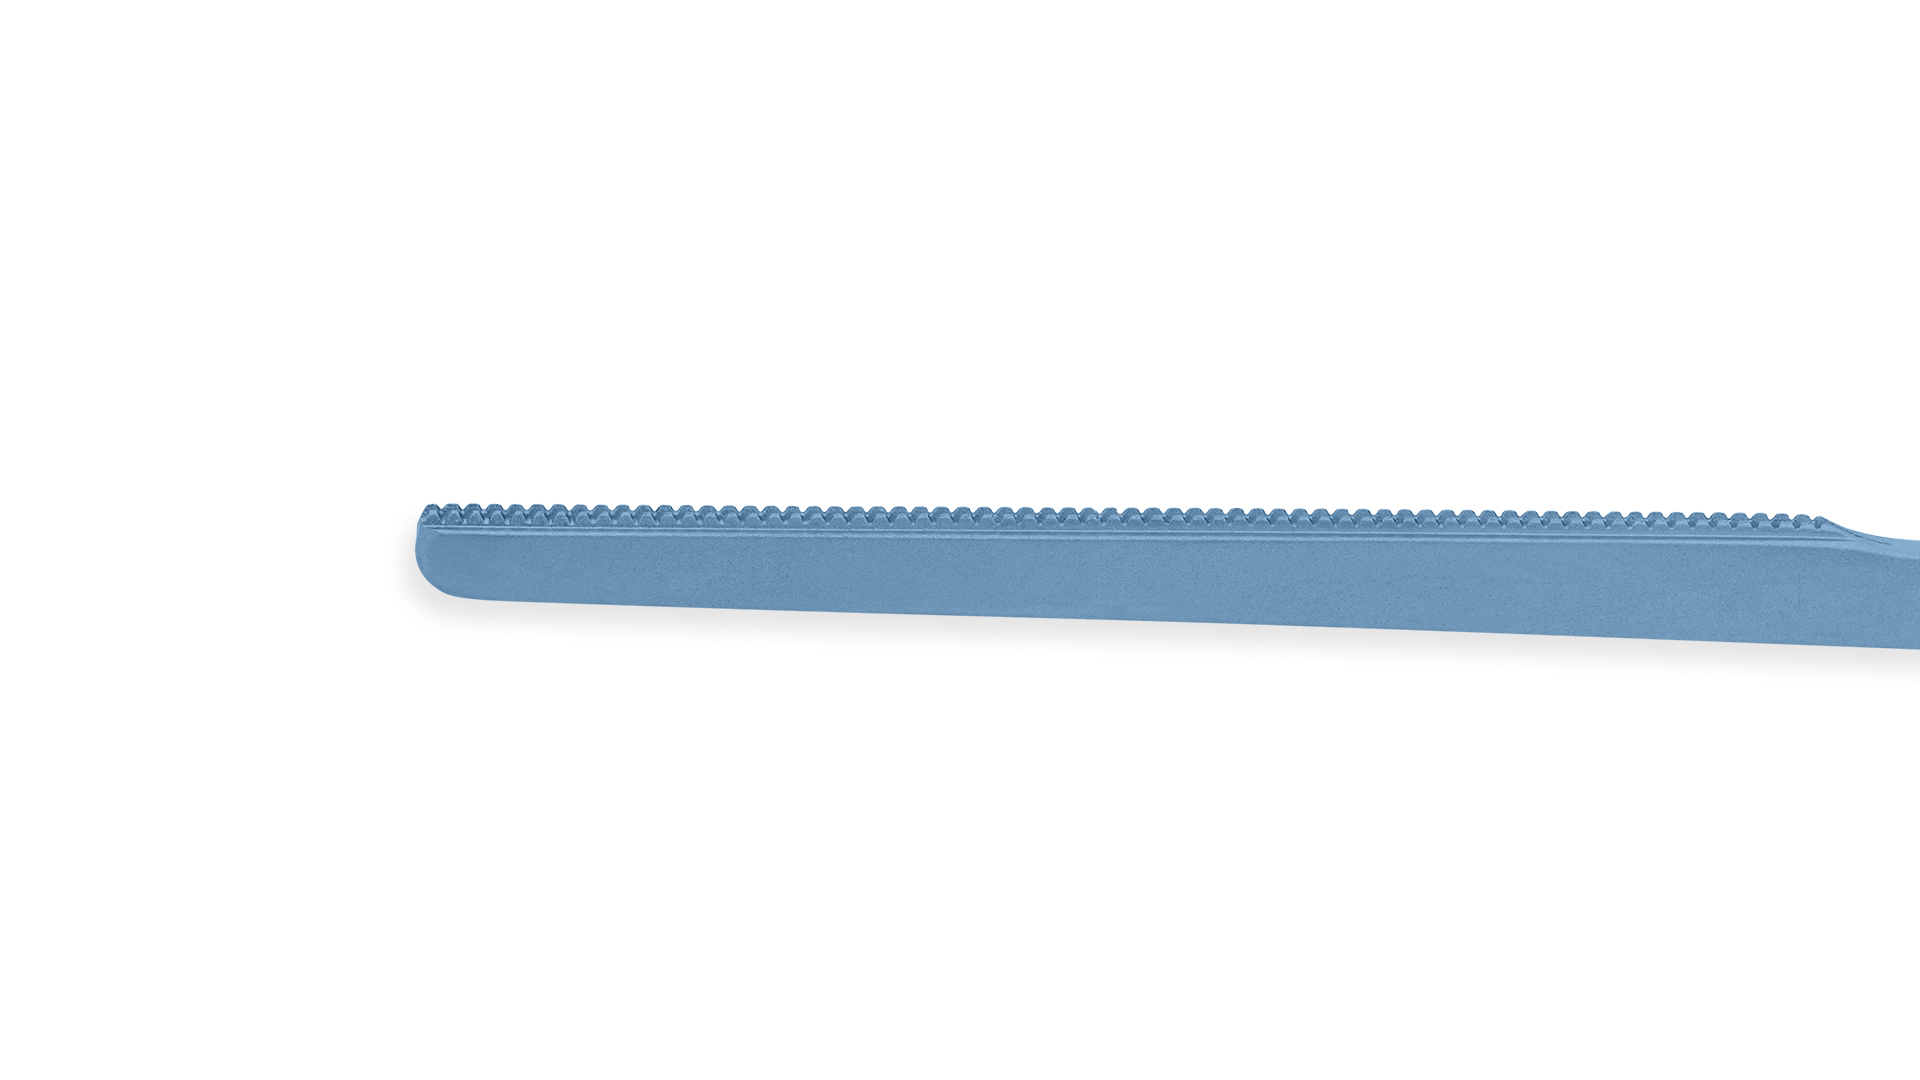 DeBakey Tissue Forceps - Straight 1.5mm tips